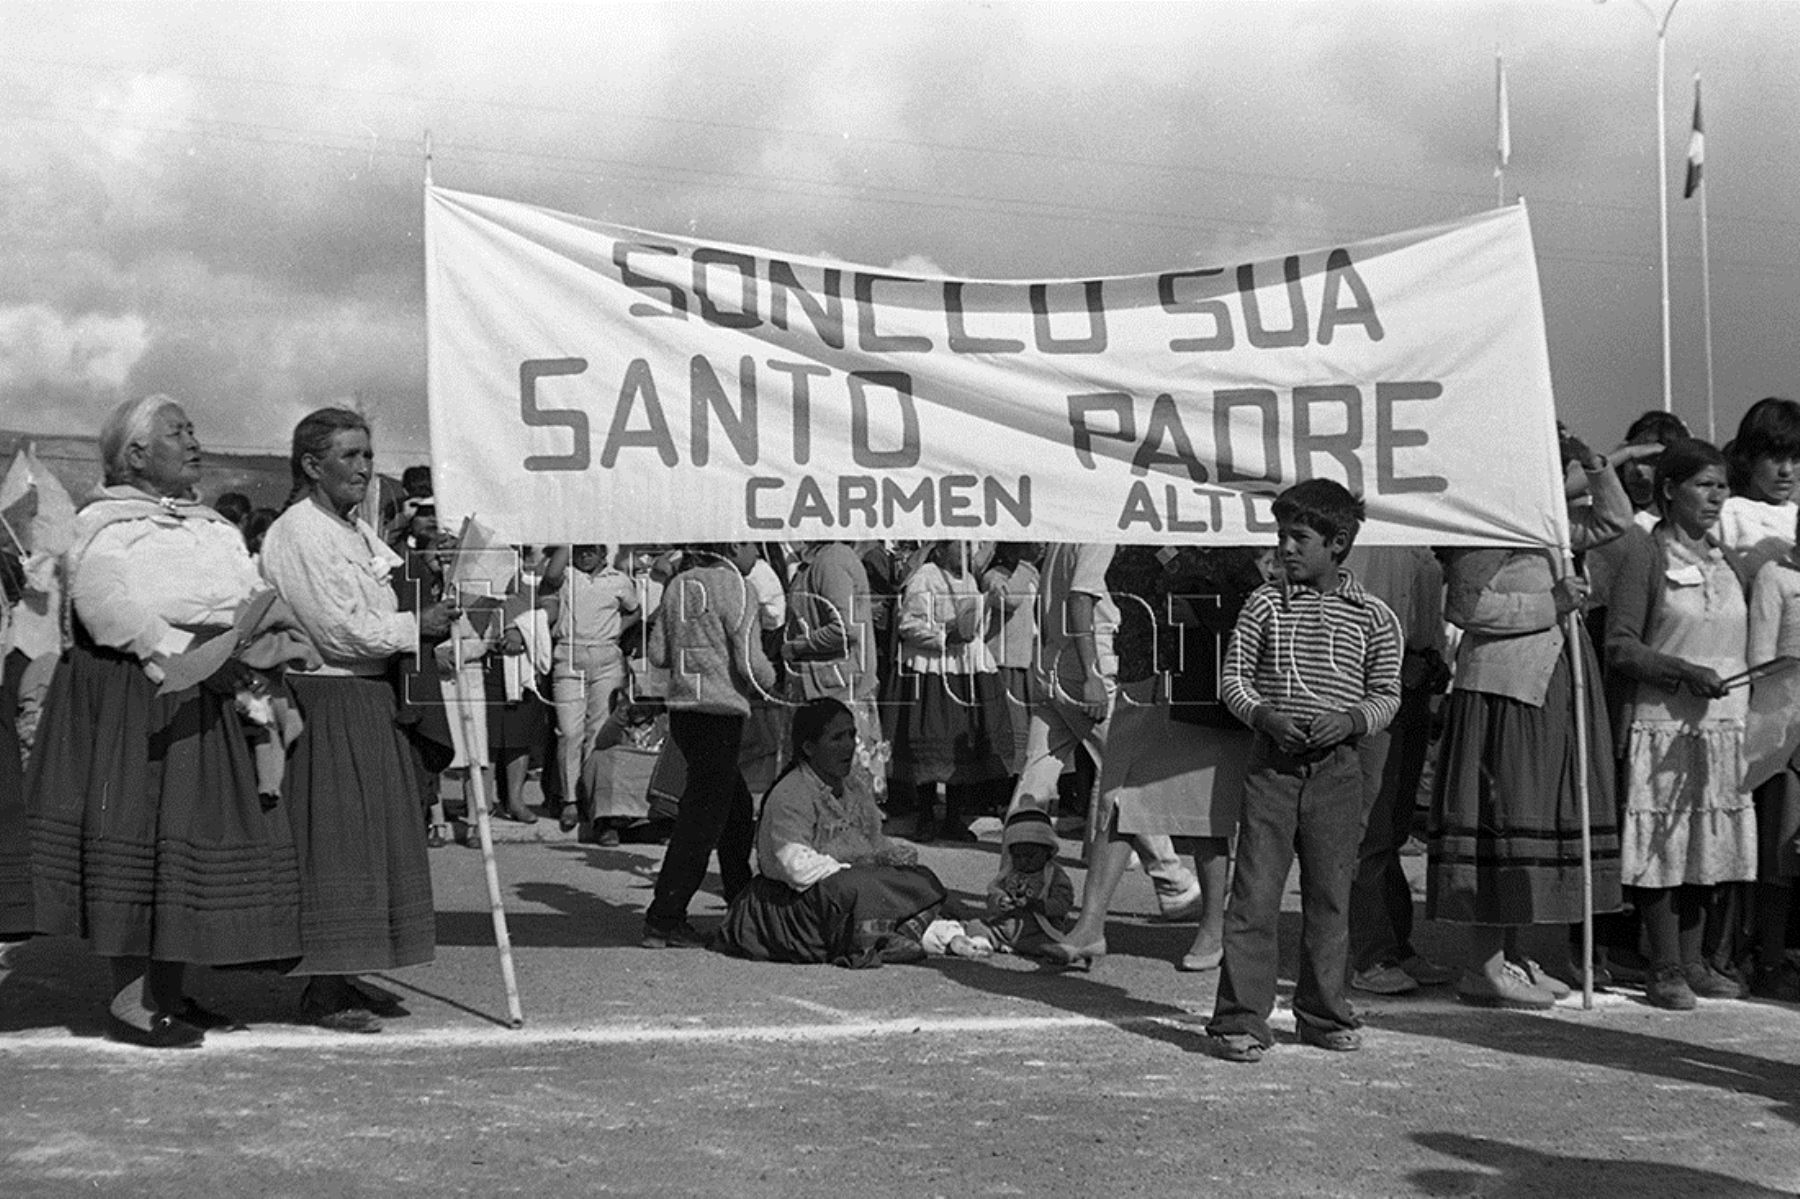 Ayacucho (1985) Miles de personas provenientes de comunidades de todo el departamento le dieron la bienvenida. En su mensaje condenó la violencia y solidarizó con el pueblo ayacuchano.